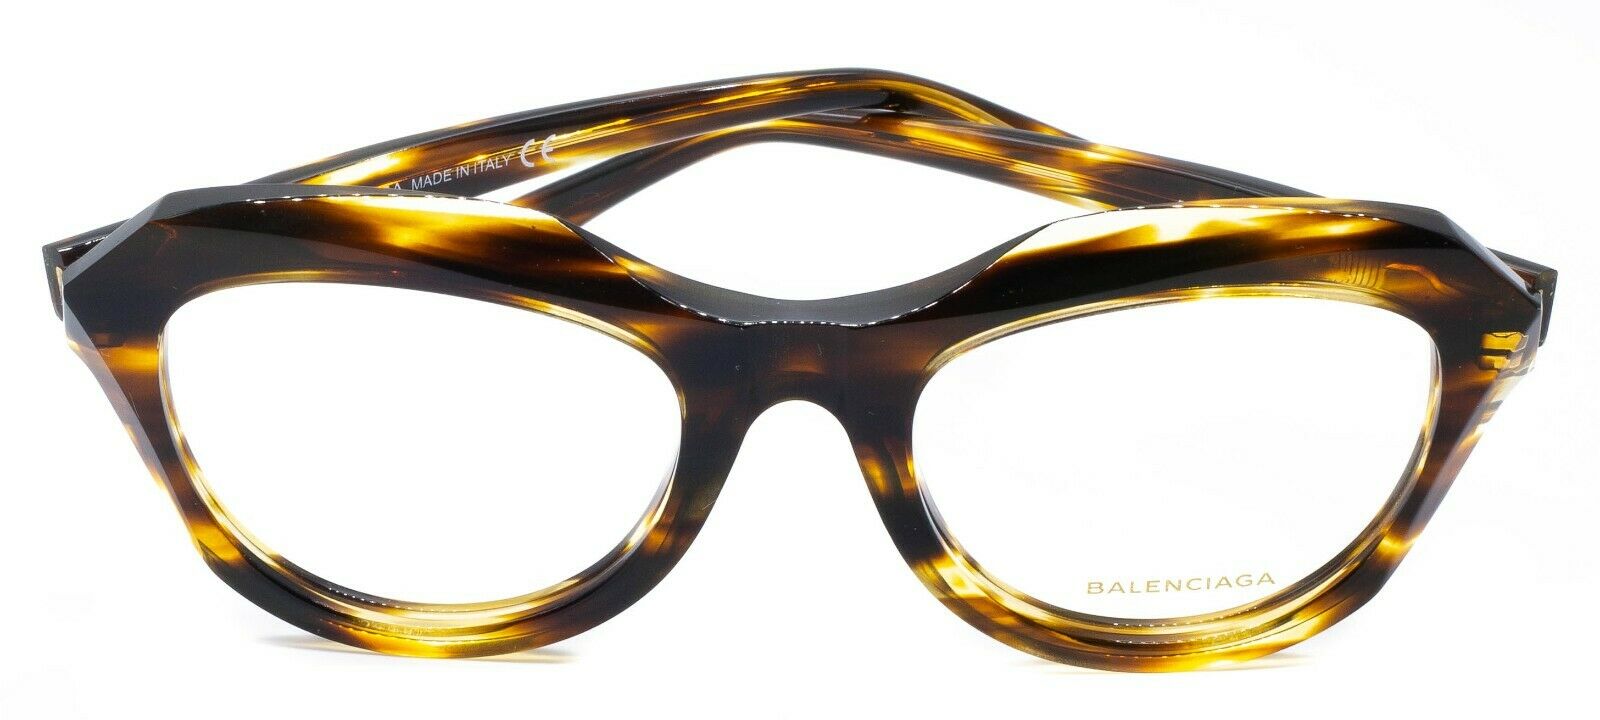 BALENCIAGA BA 5076 050 51mm Eyewear FRAMES RX Optical Eyeglasses BNIB New -Italy